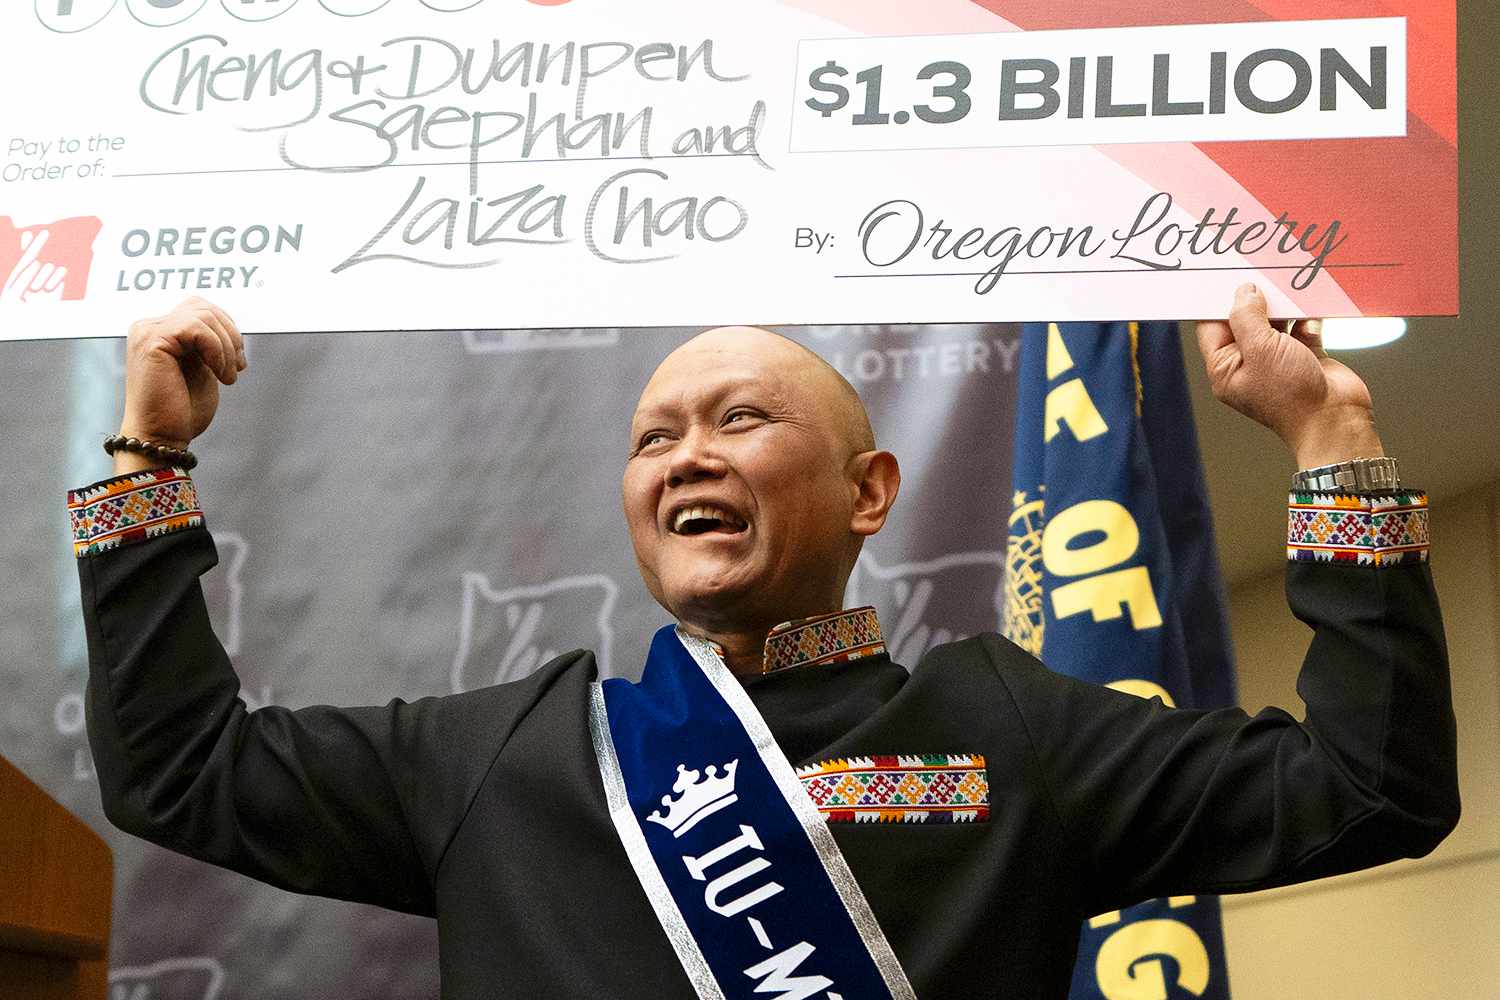 Man Fighting Cancer Named as $1.3 Billion Lottery Winner